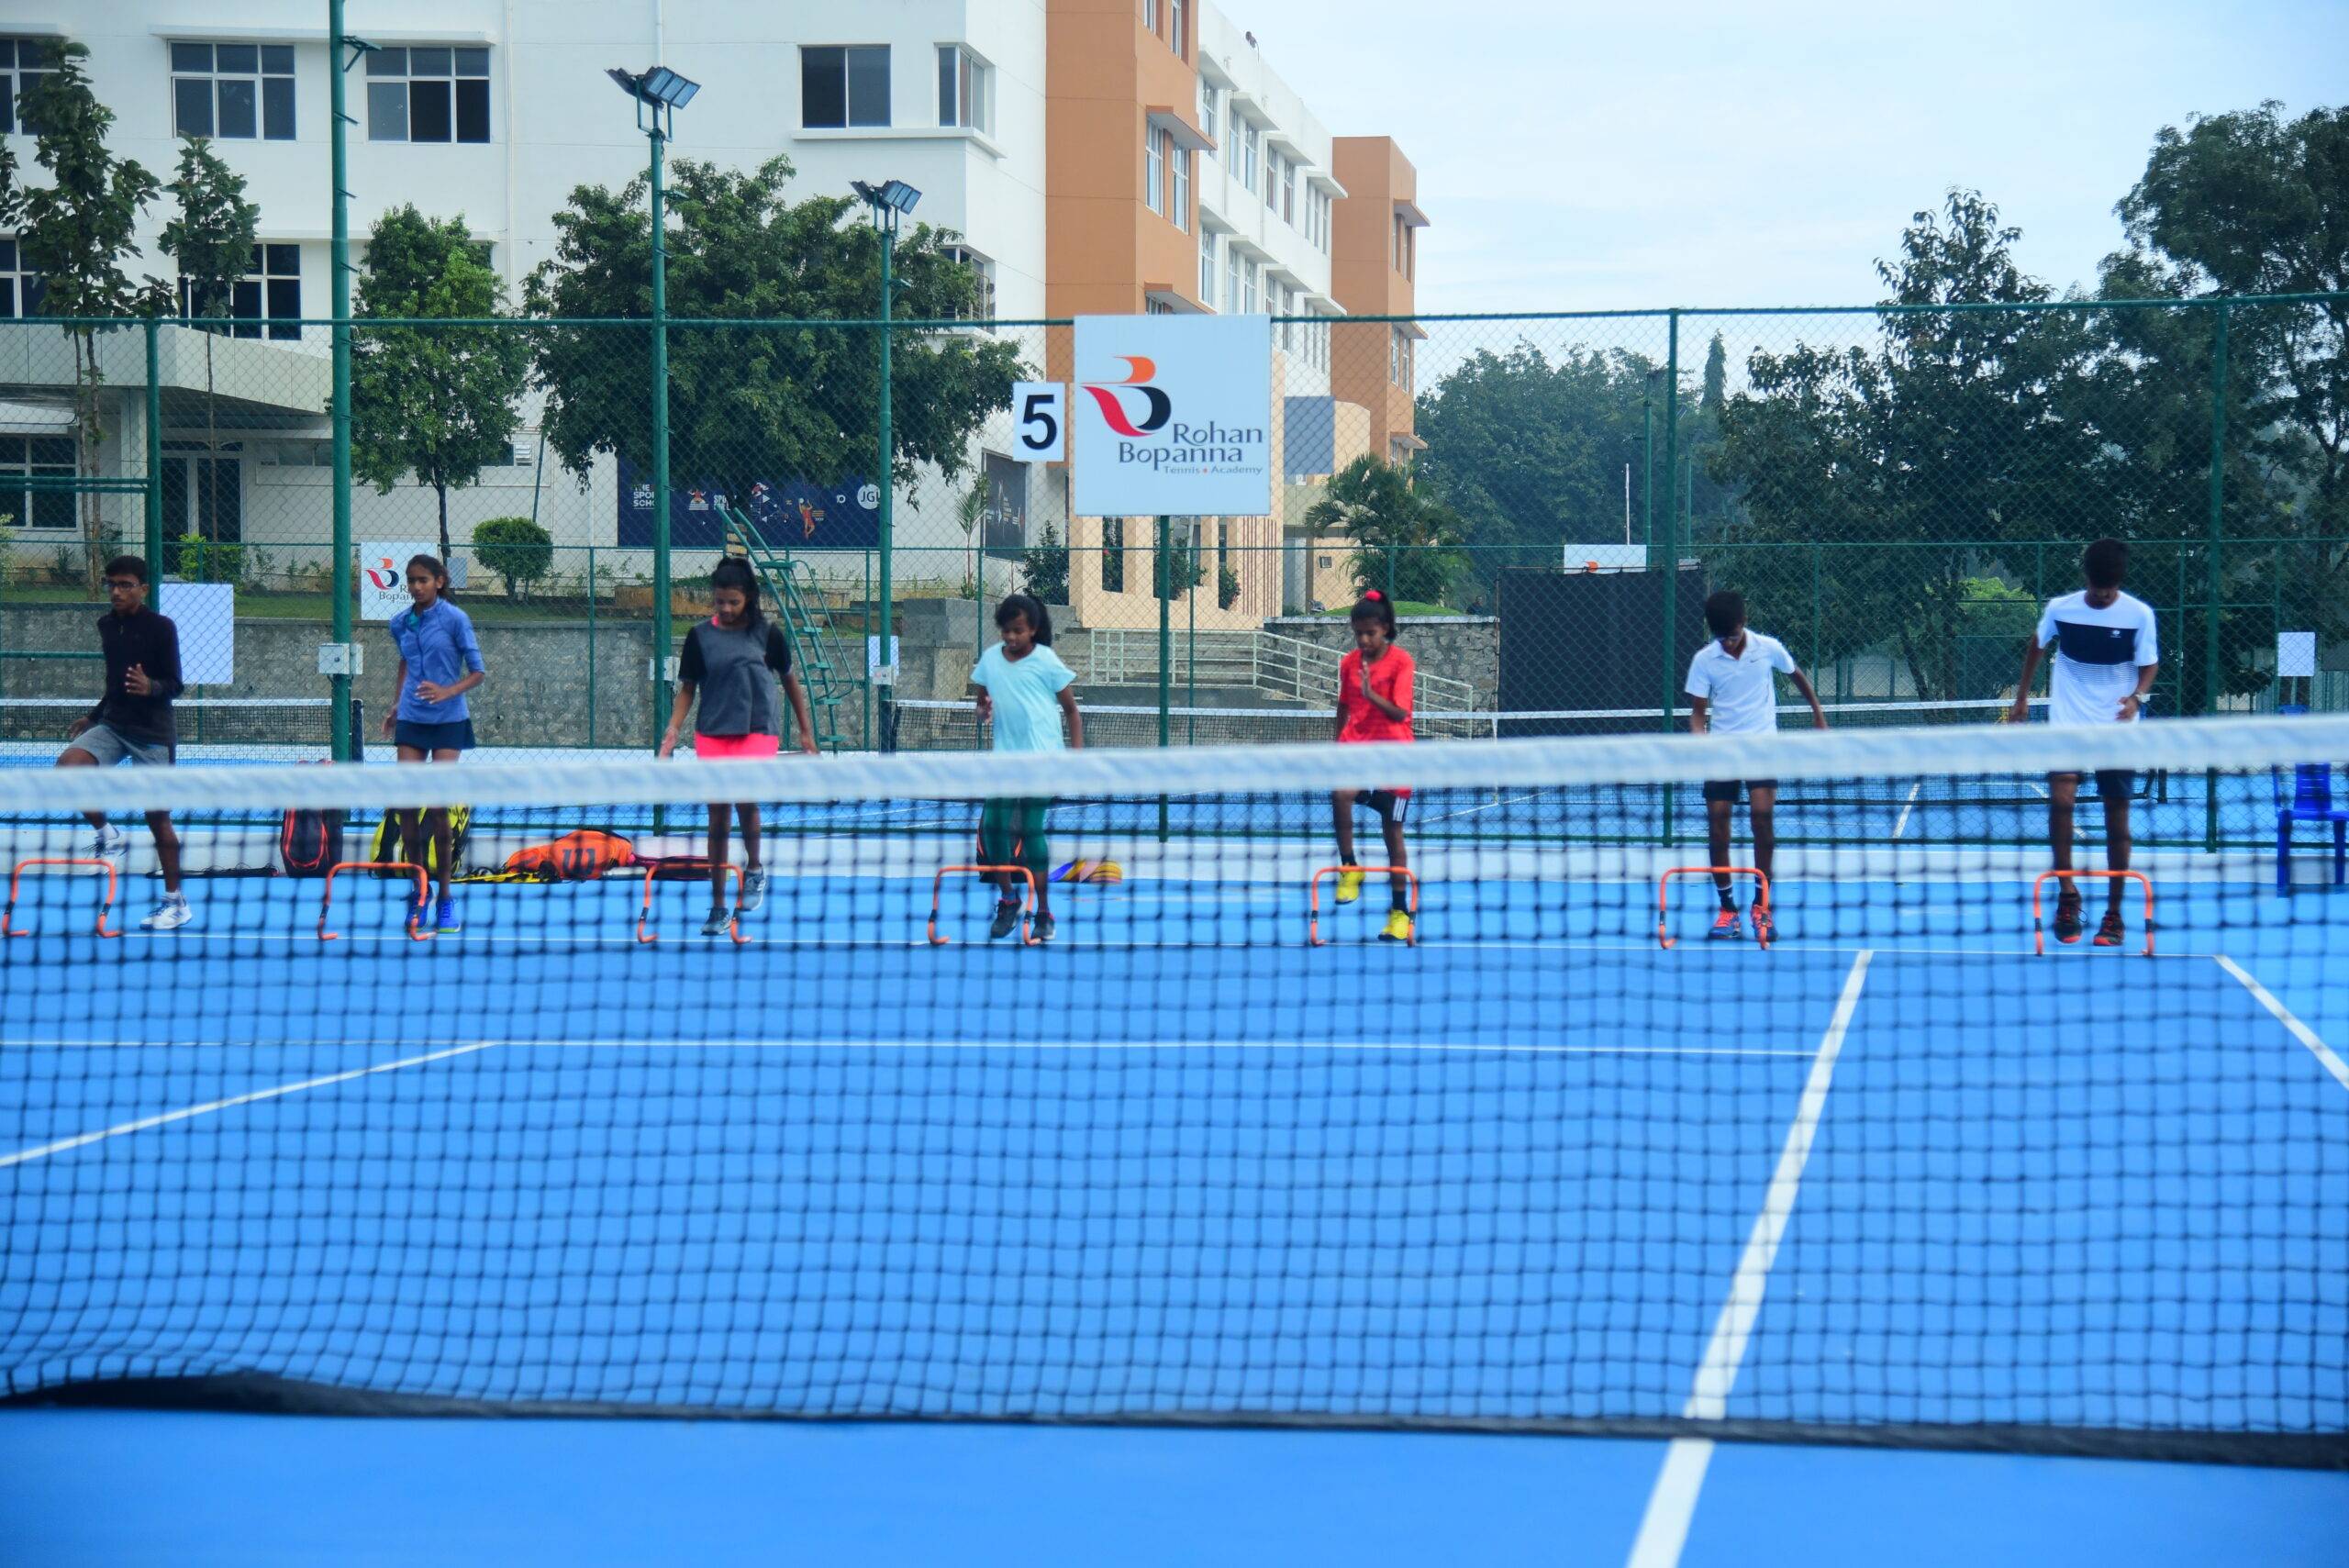 Top Tennis Training Academies In India